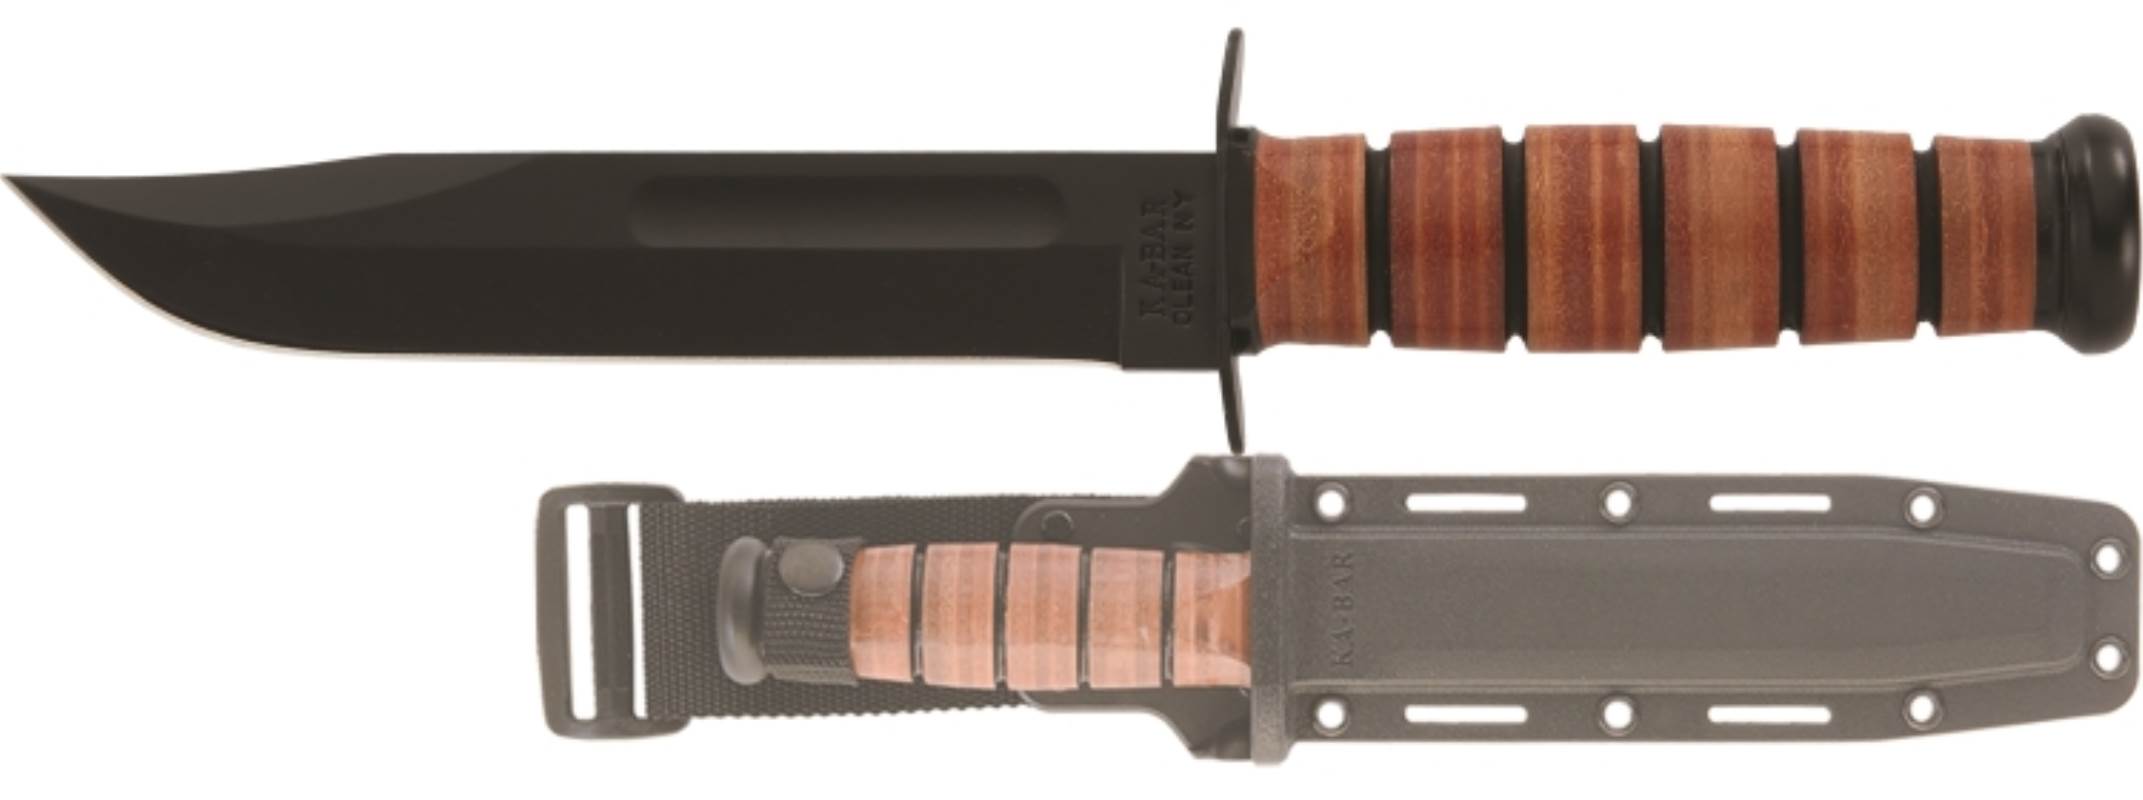 USMC Leather Handled Utility Knife